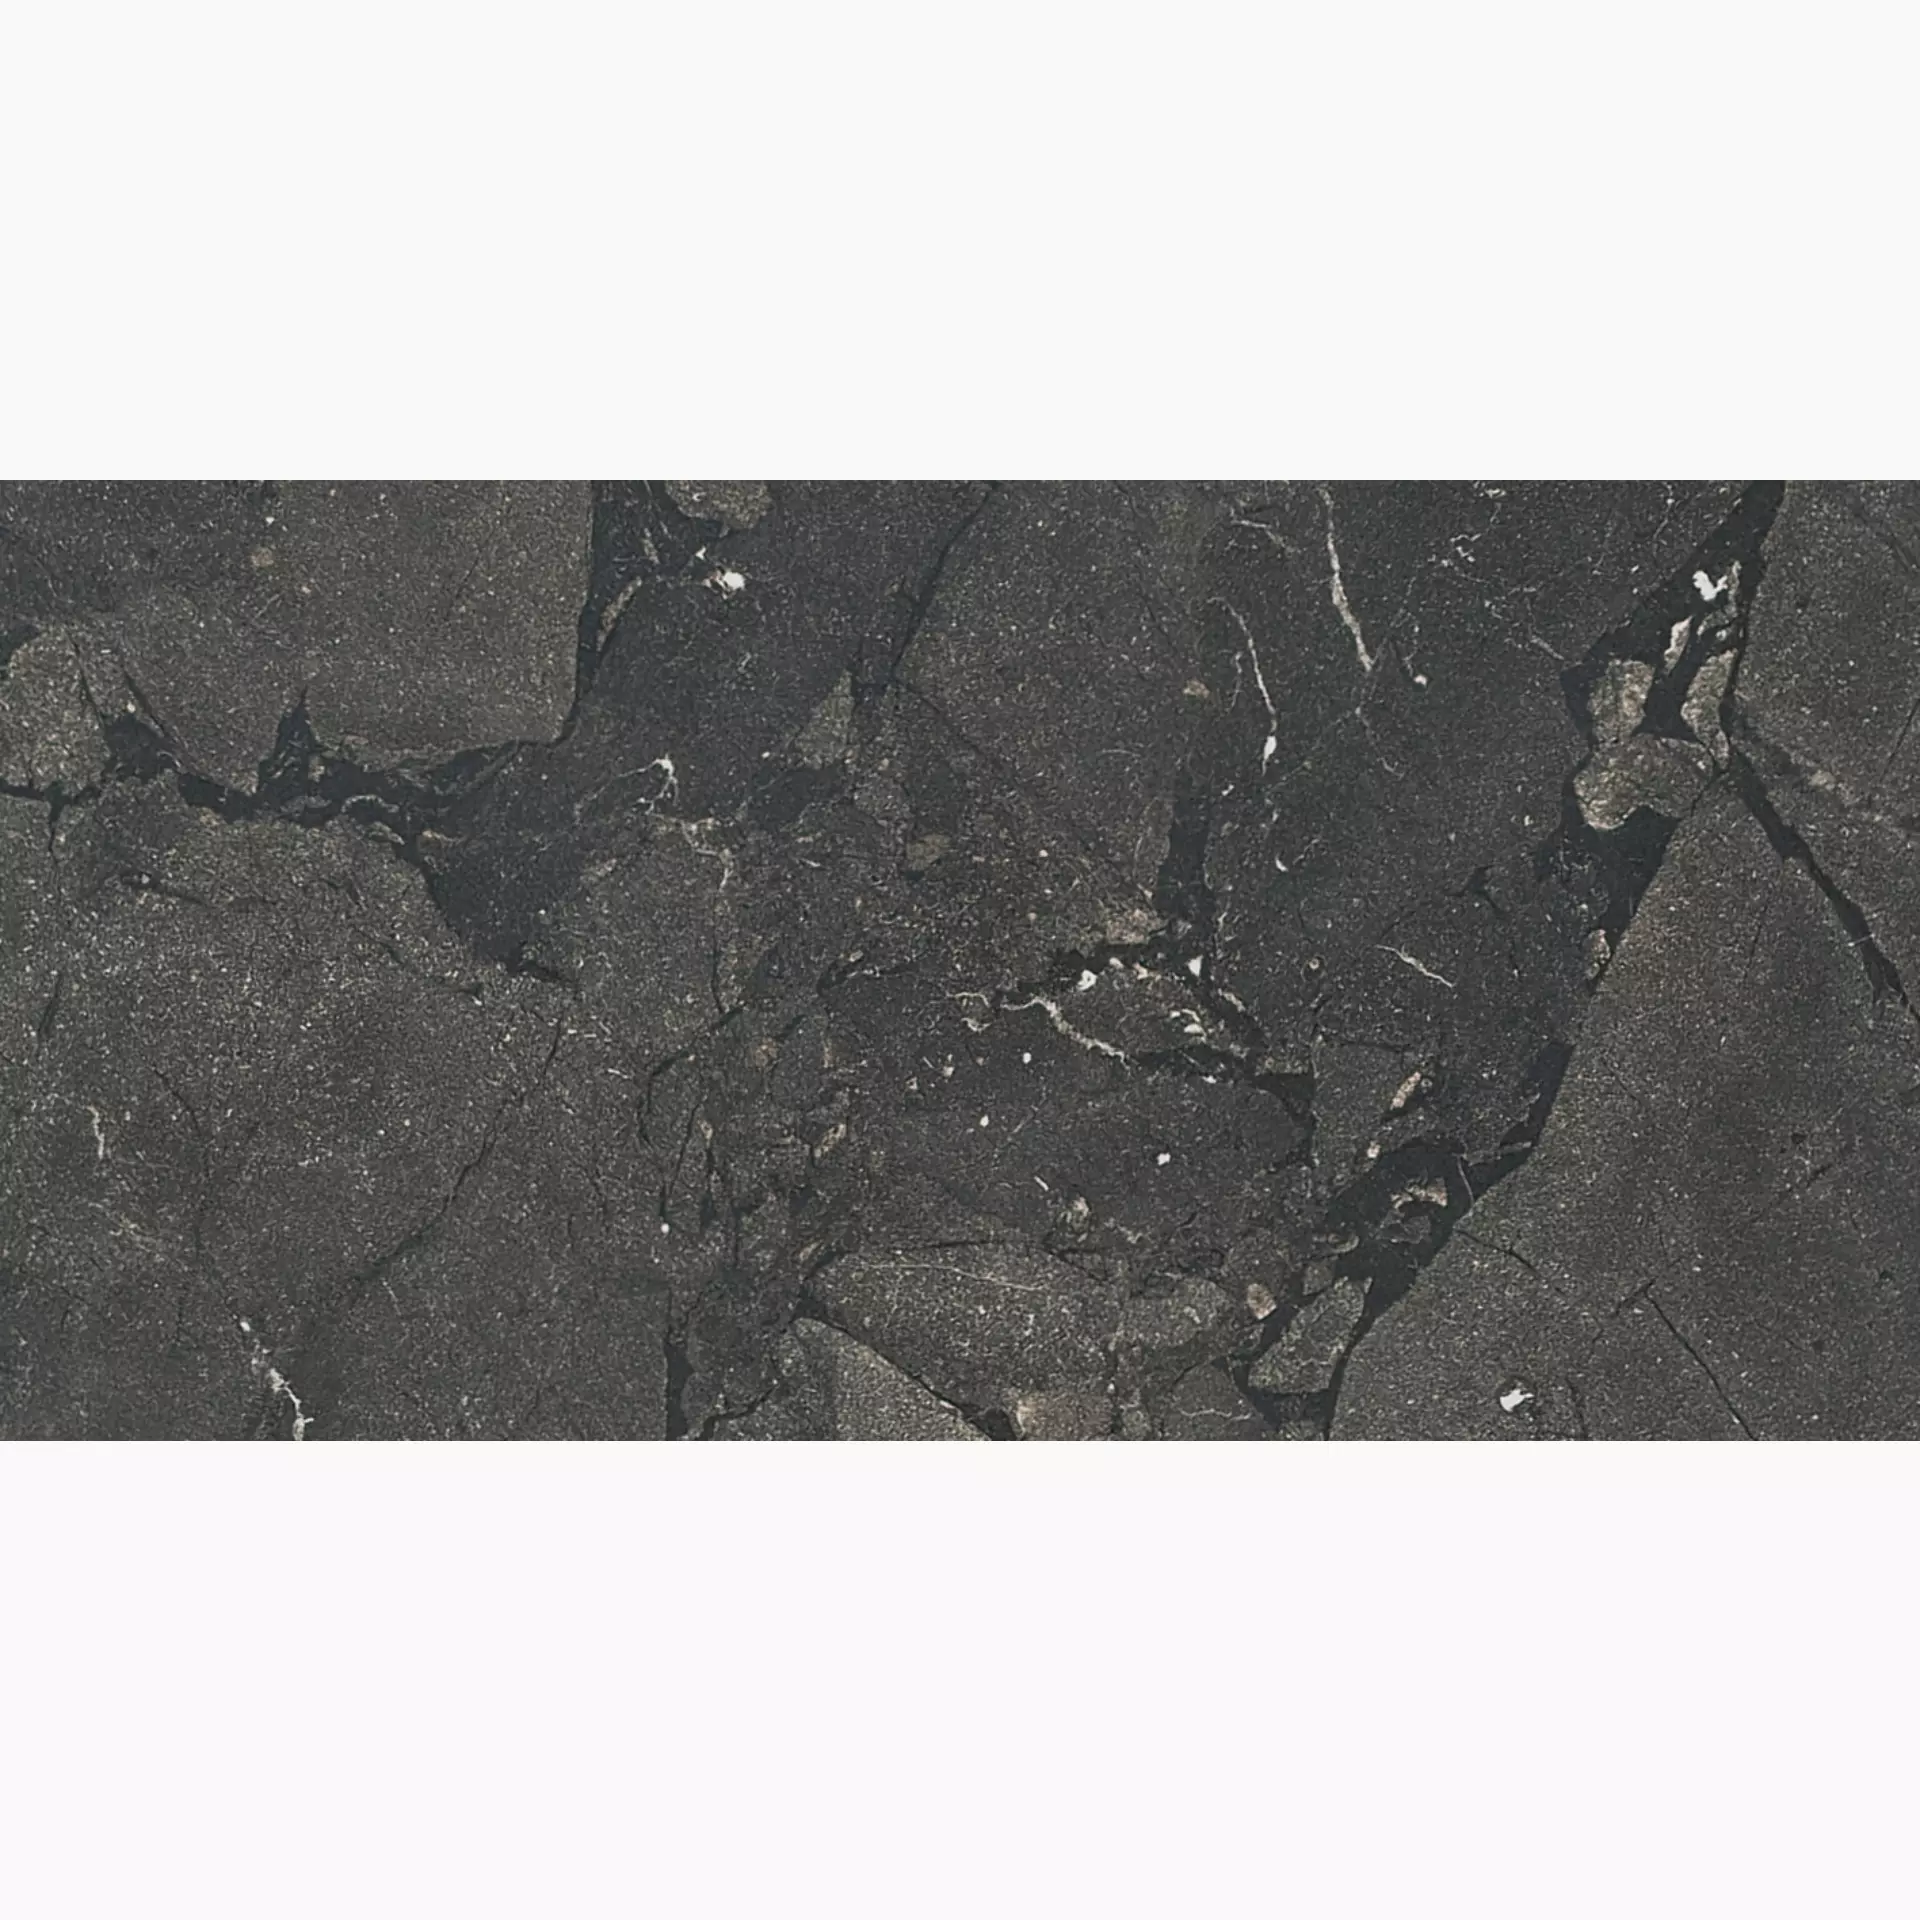 Florim Timeless Black Deep Naturale – Matt 744860 30x60cm rectified 9mm